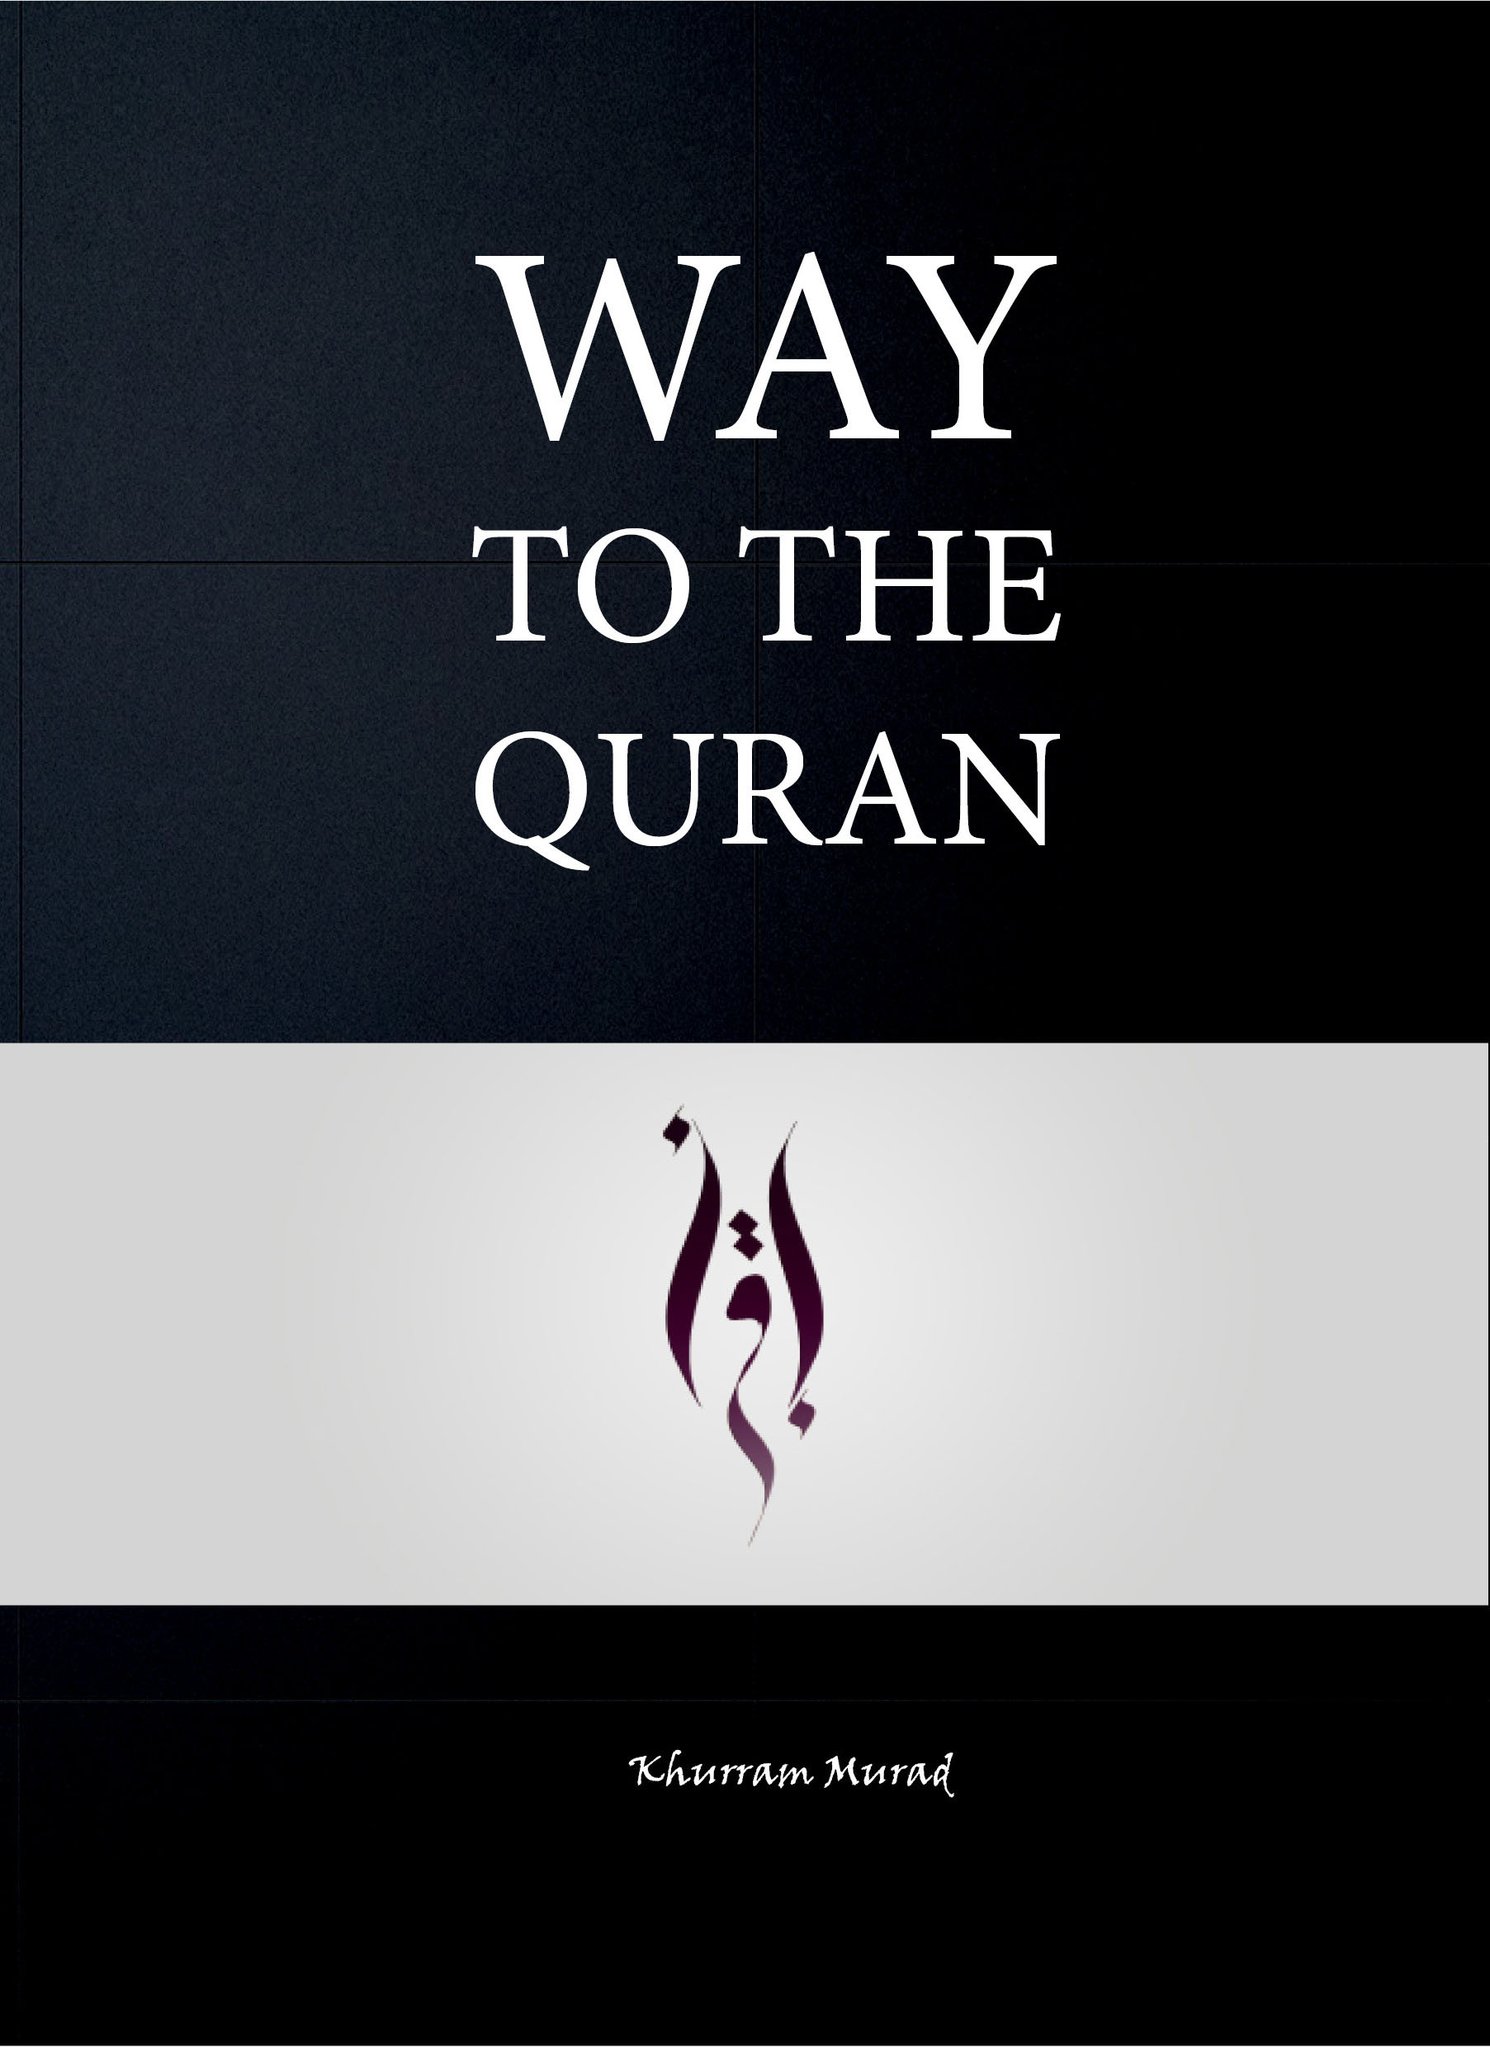 Way to the Quraan- Khurram Murad